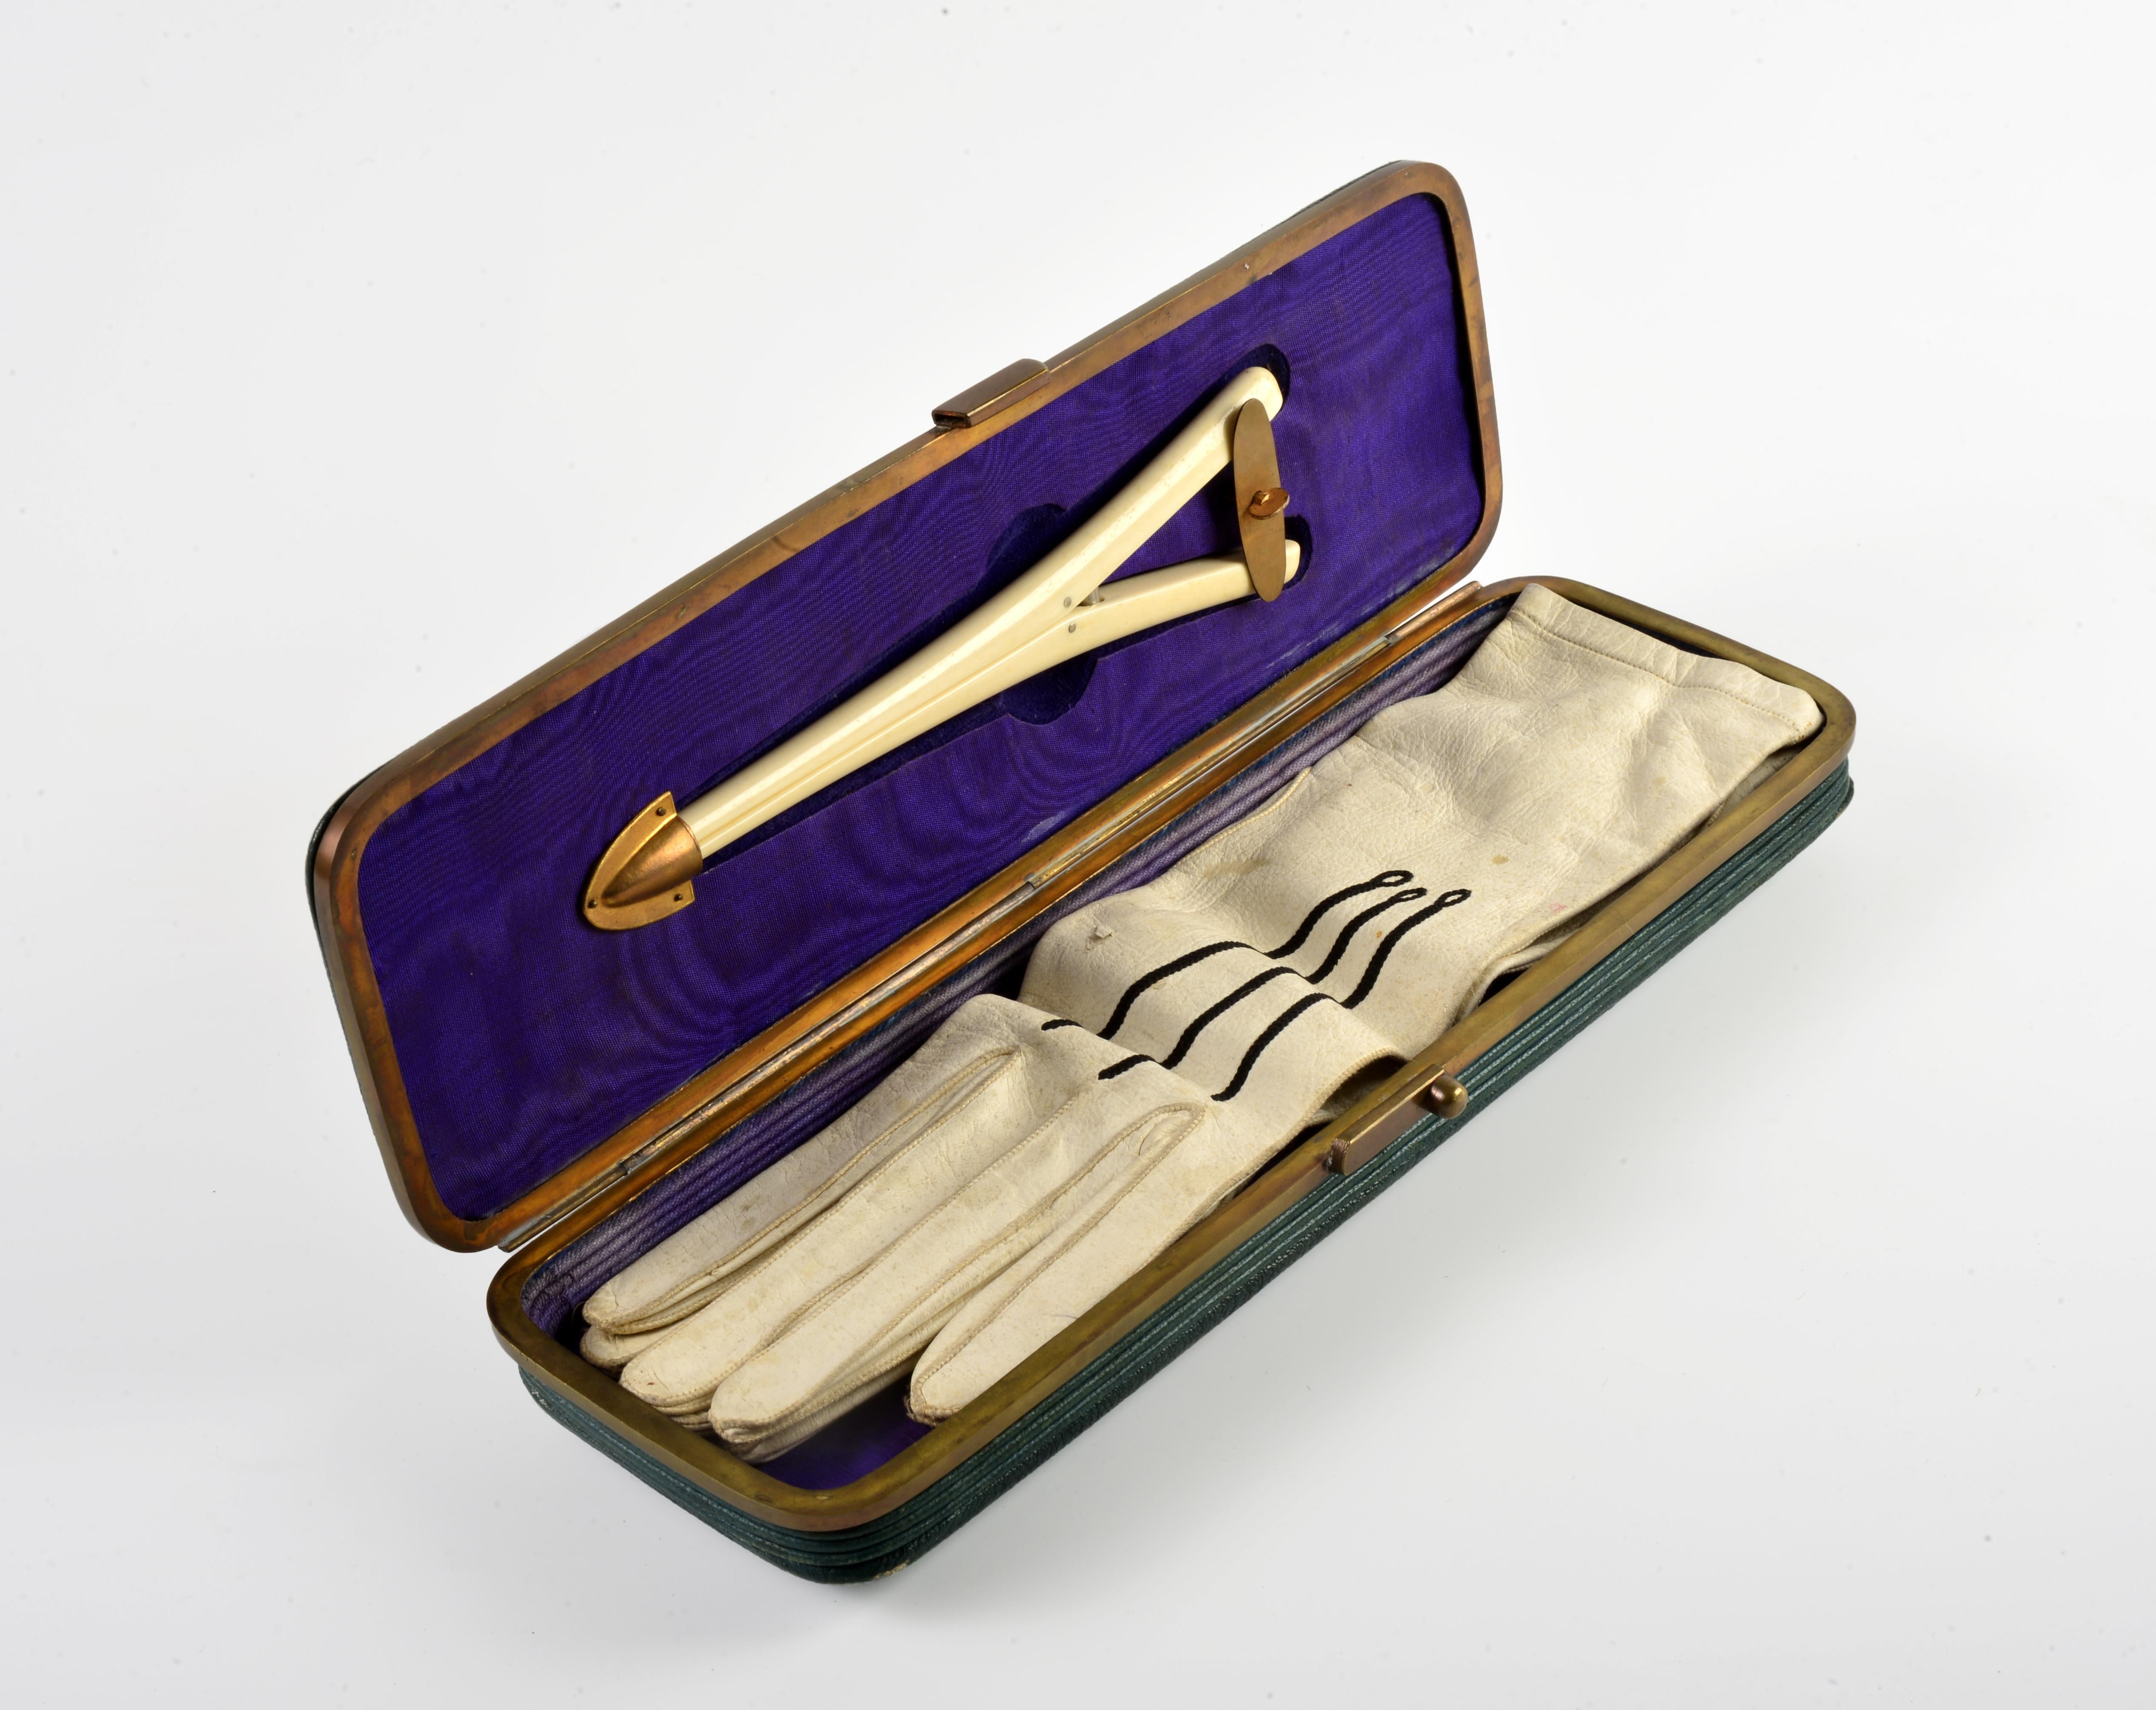 Boîte à gants française de la fin du XIXe siècle, probablement fabriquée par Louis Ducat, successeur de la firme Smal. Cette entreprise était située sur la place du Palais Royal et fournissait la famille impériale sous Napoléon III. Il s'agit d'un